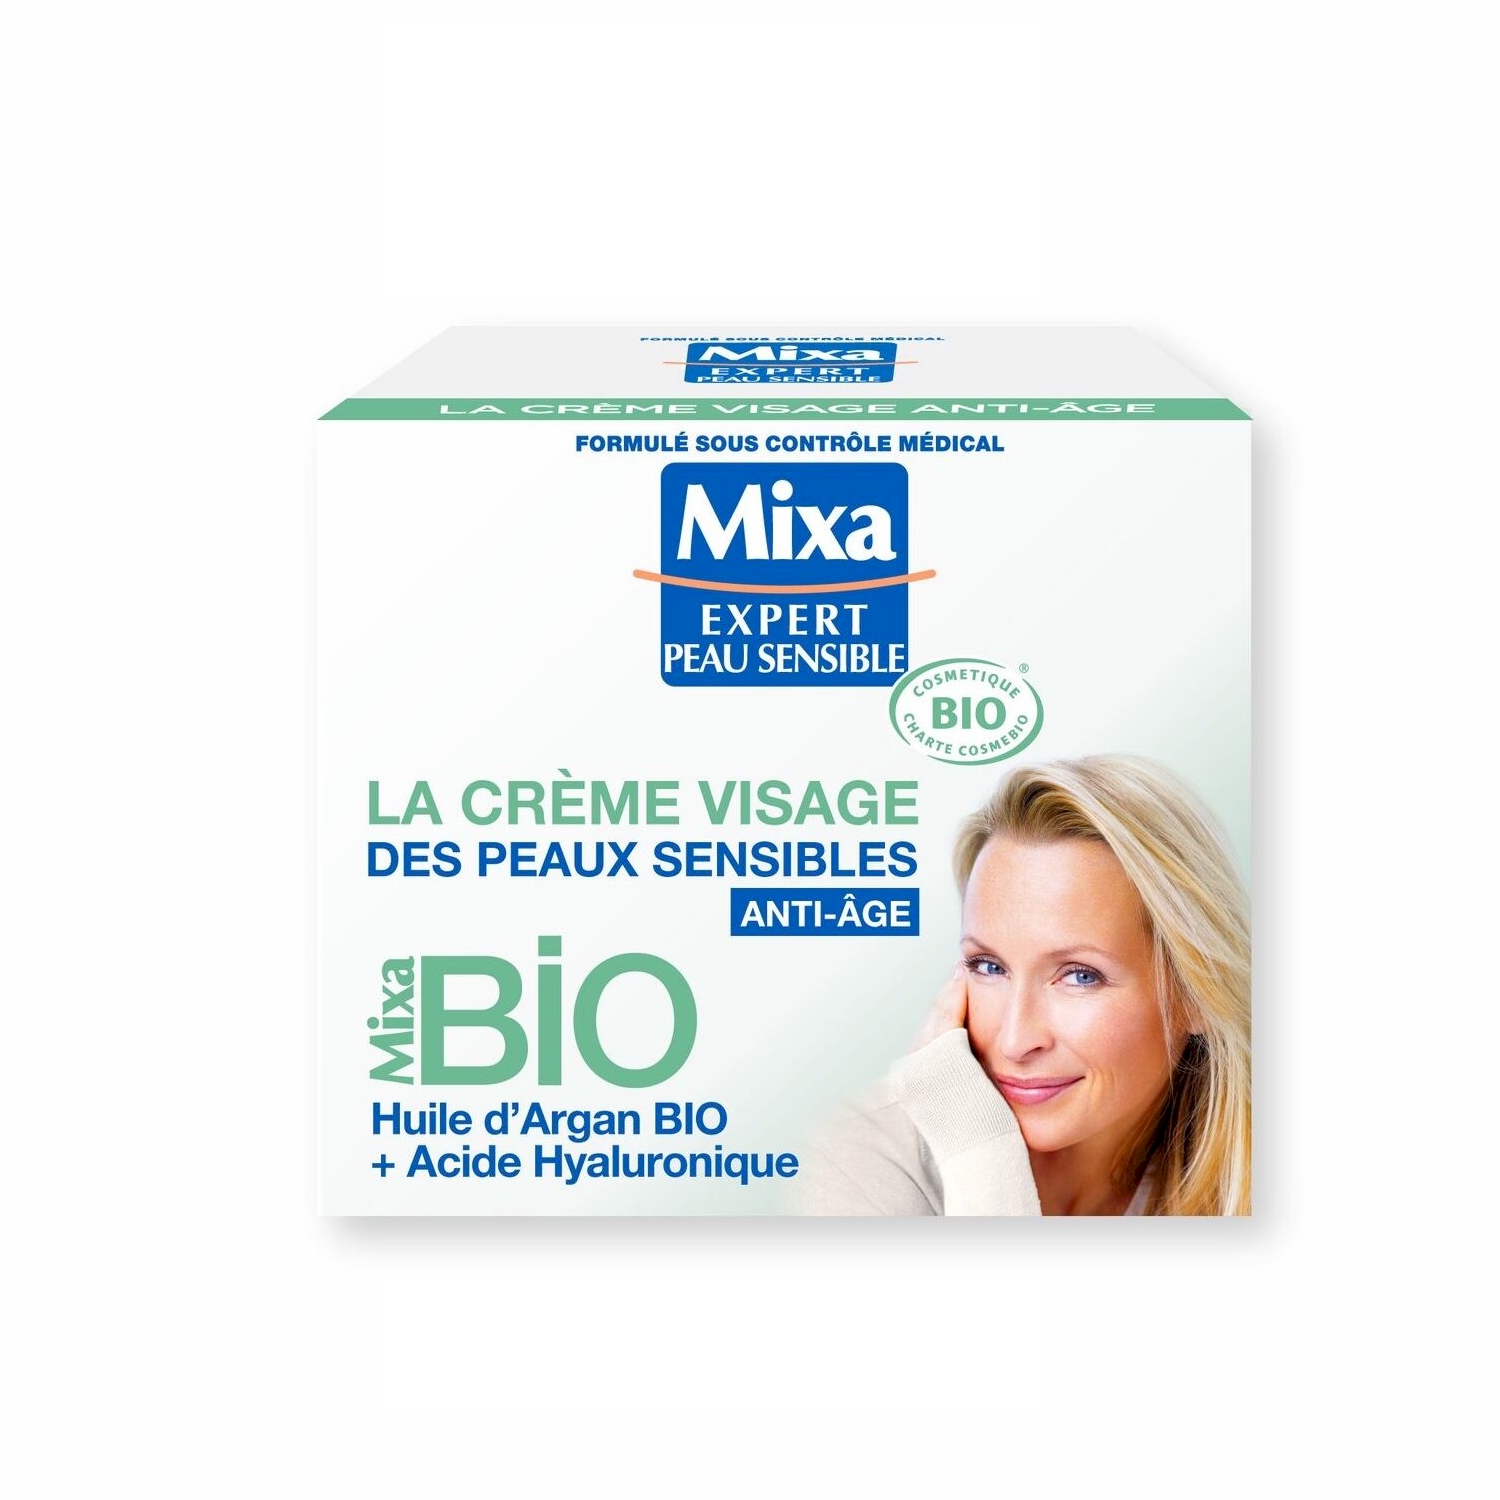 La Crème Visage des Peaux Sensibles - Mixa BIO - Mixa